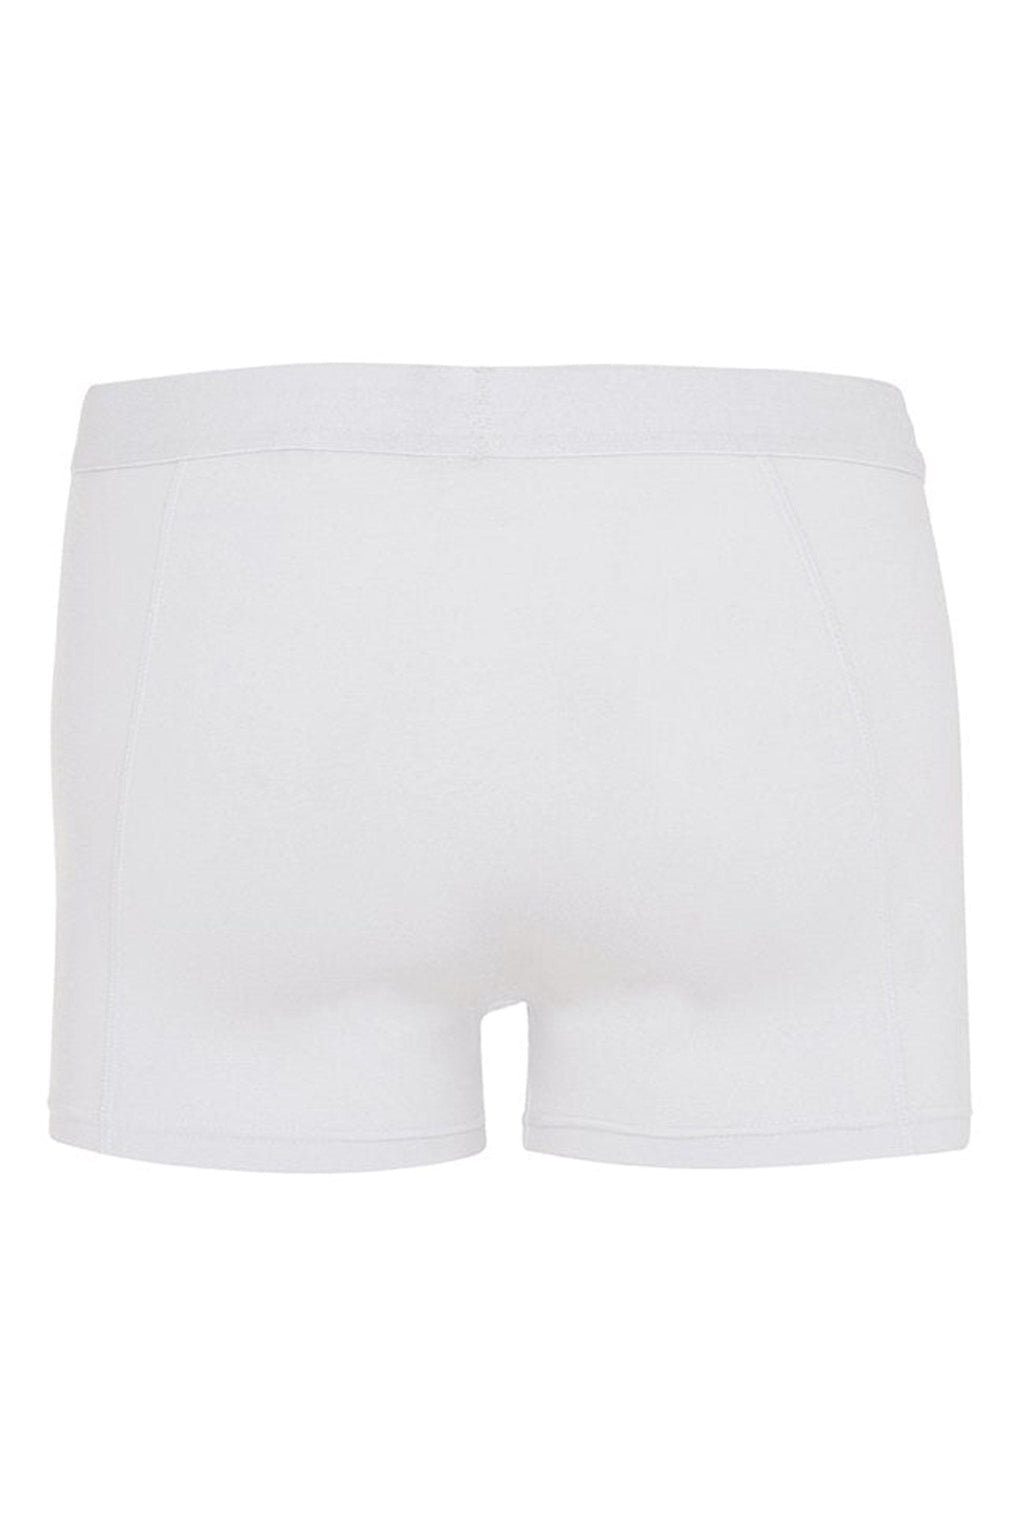 内裤 - 优质白色